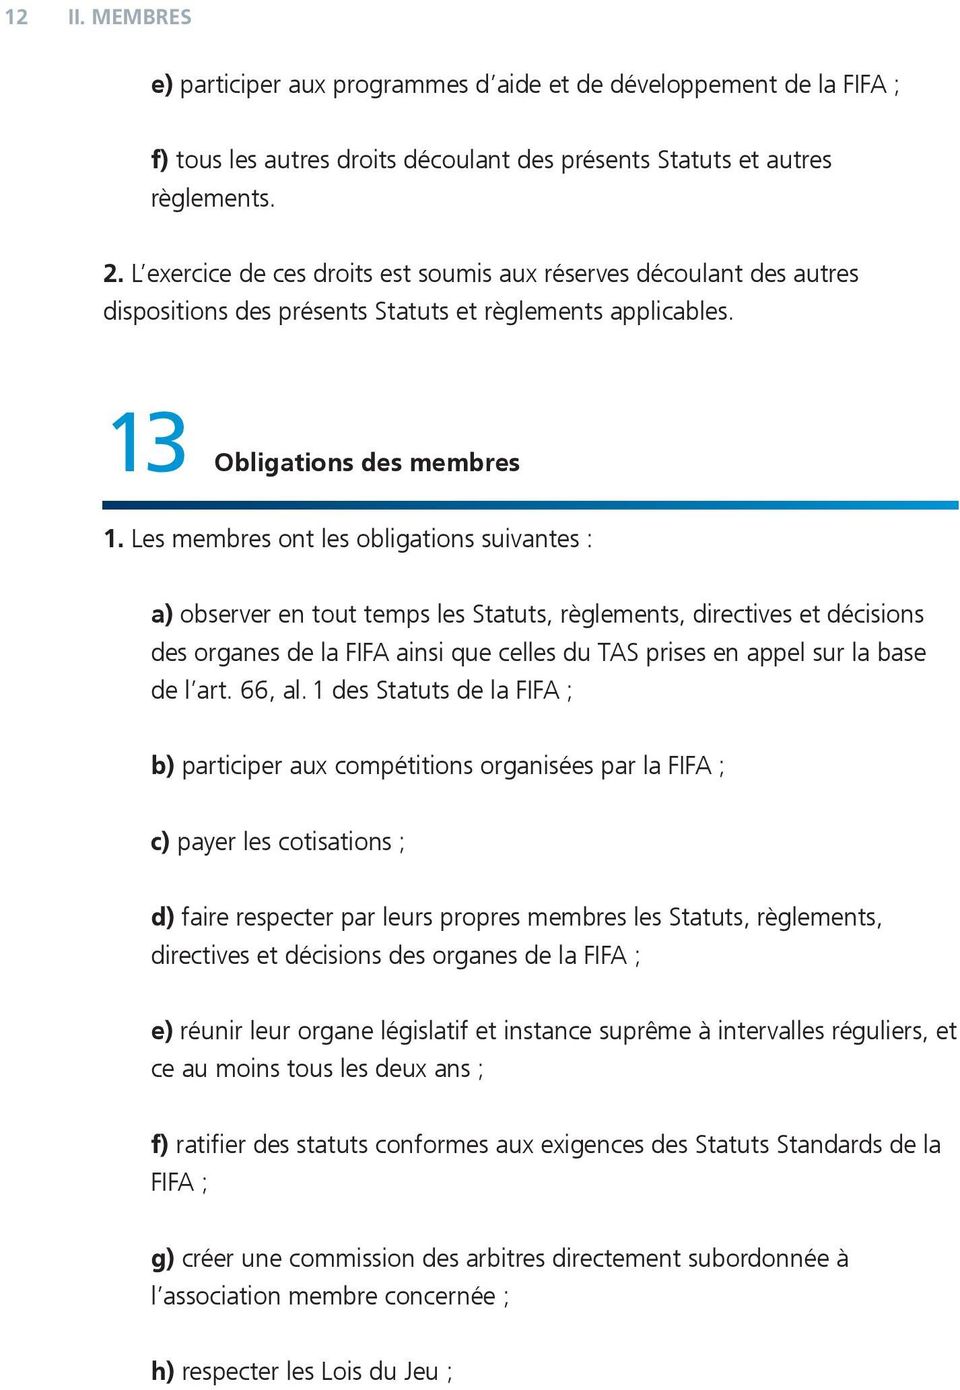 Les membres ont les obligations suivantes : a) observer en tout temps les Statuts, règlements, directives et décisions des organes de la FIFA ainsi que celles du TAS prises en appel sur la base de l